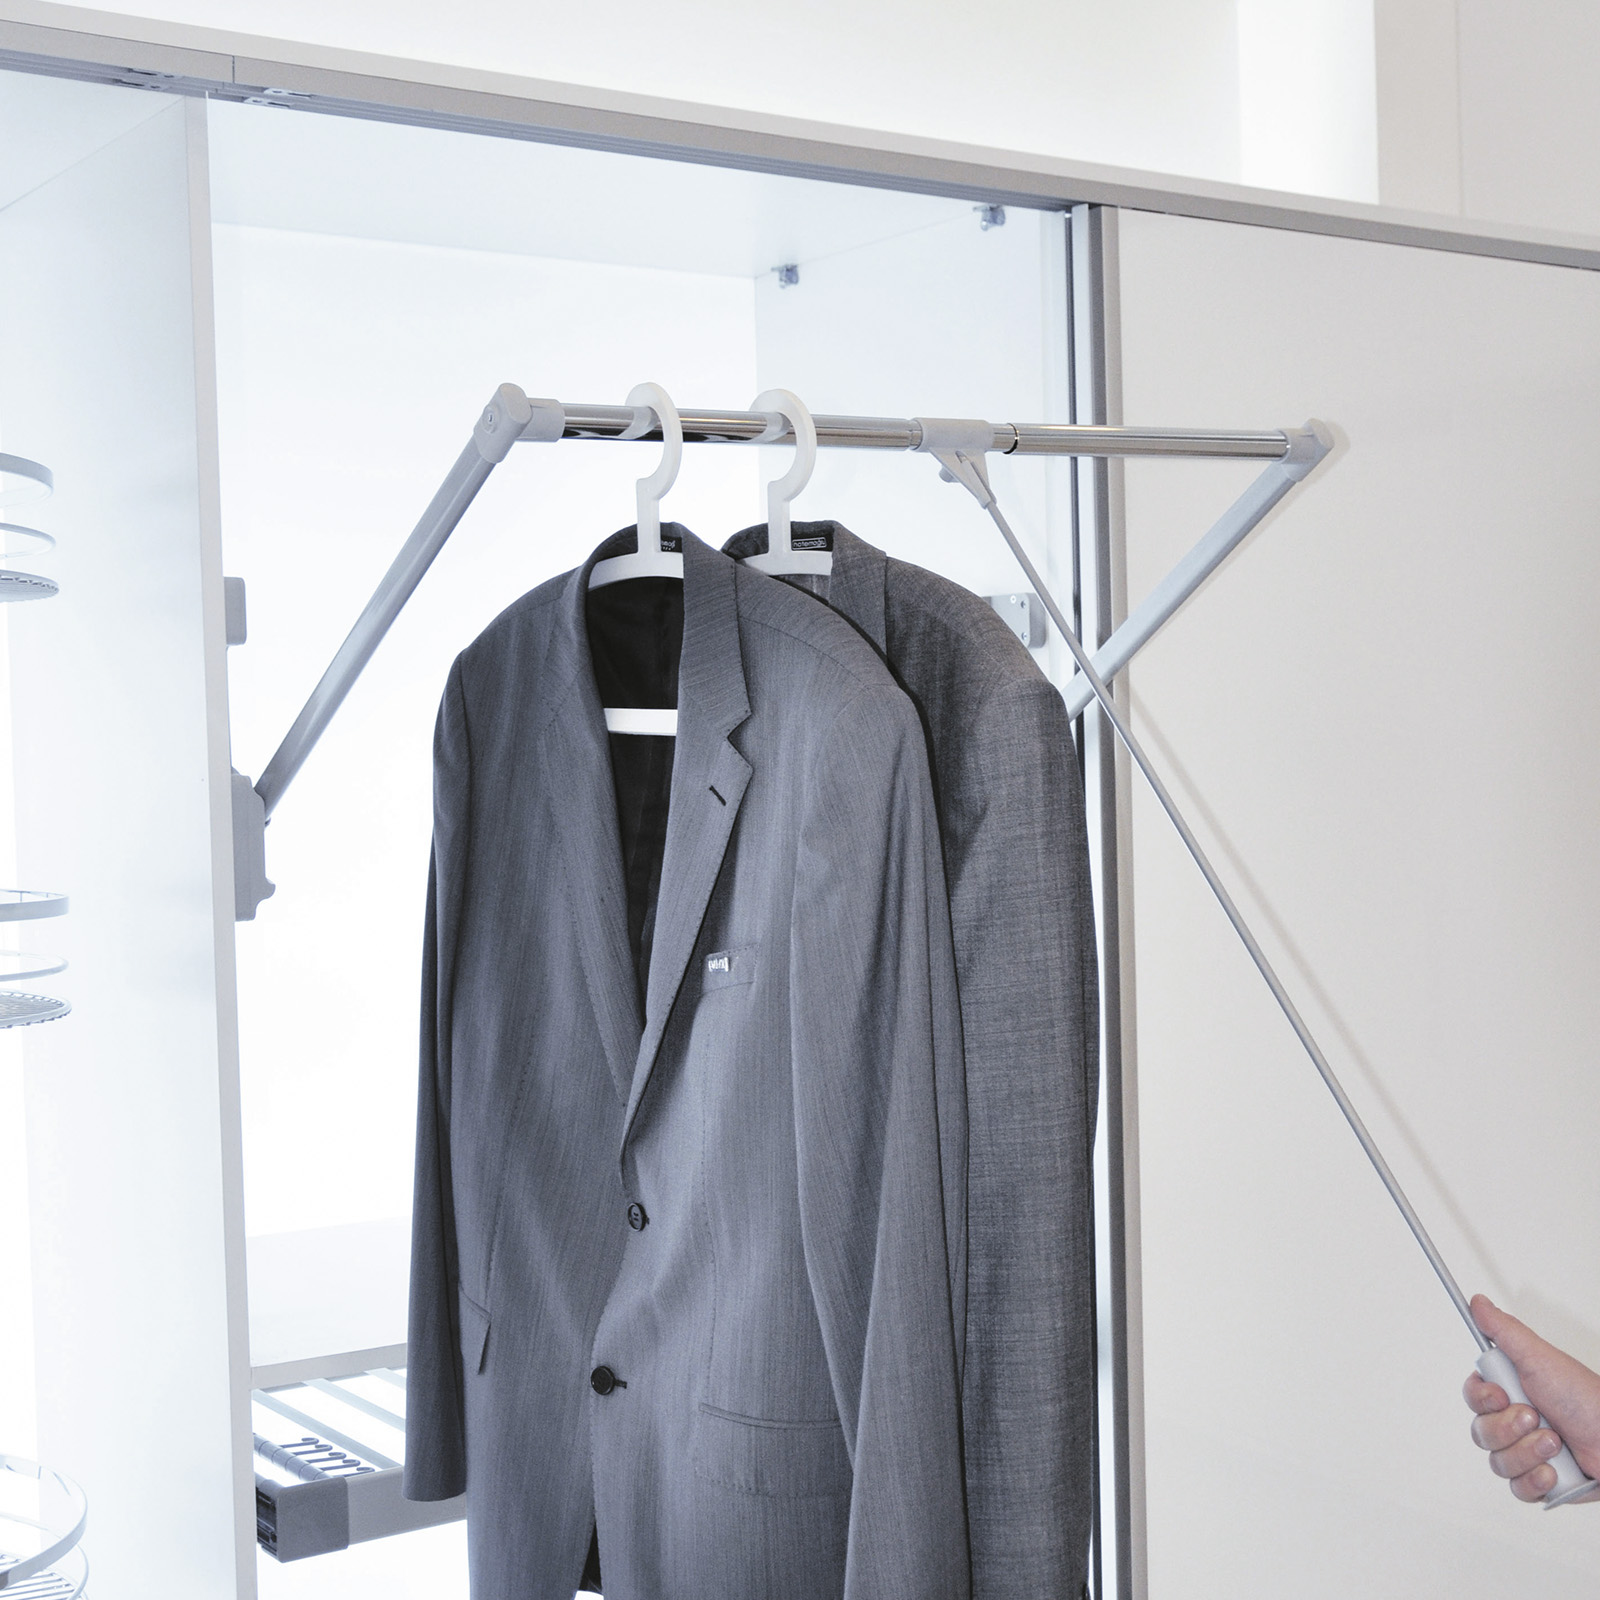 830-1150mm breite regulierbar Kleiderlift für Schrankbreite Weiße Farbe kleiderschranklift Emuca